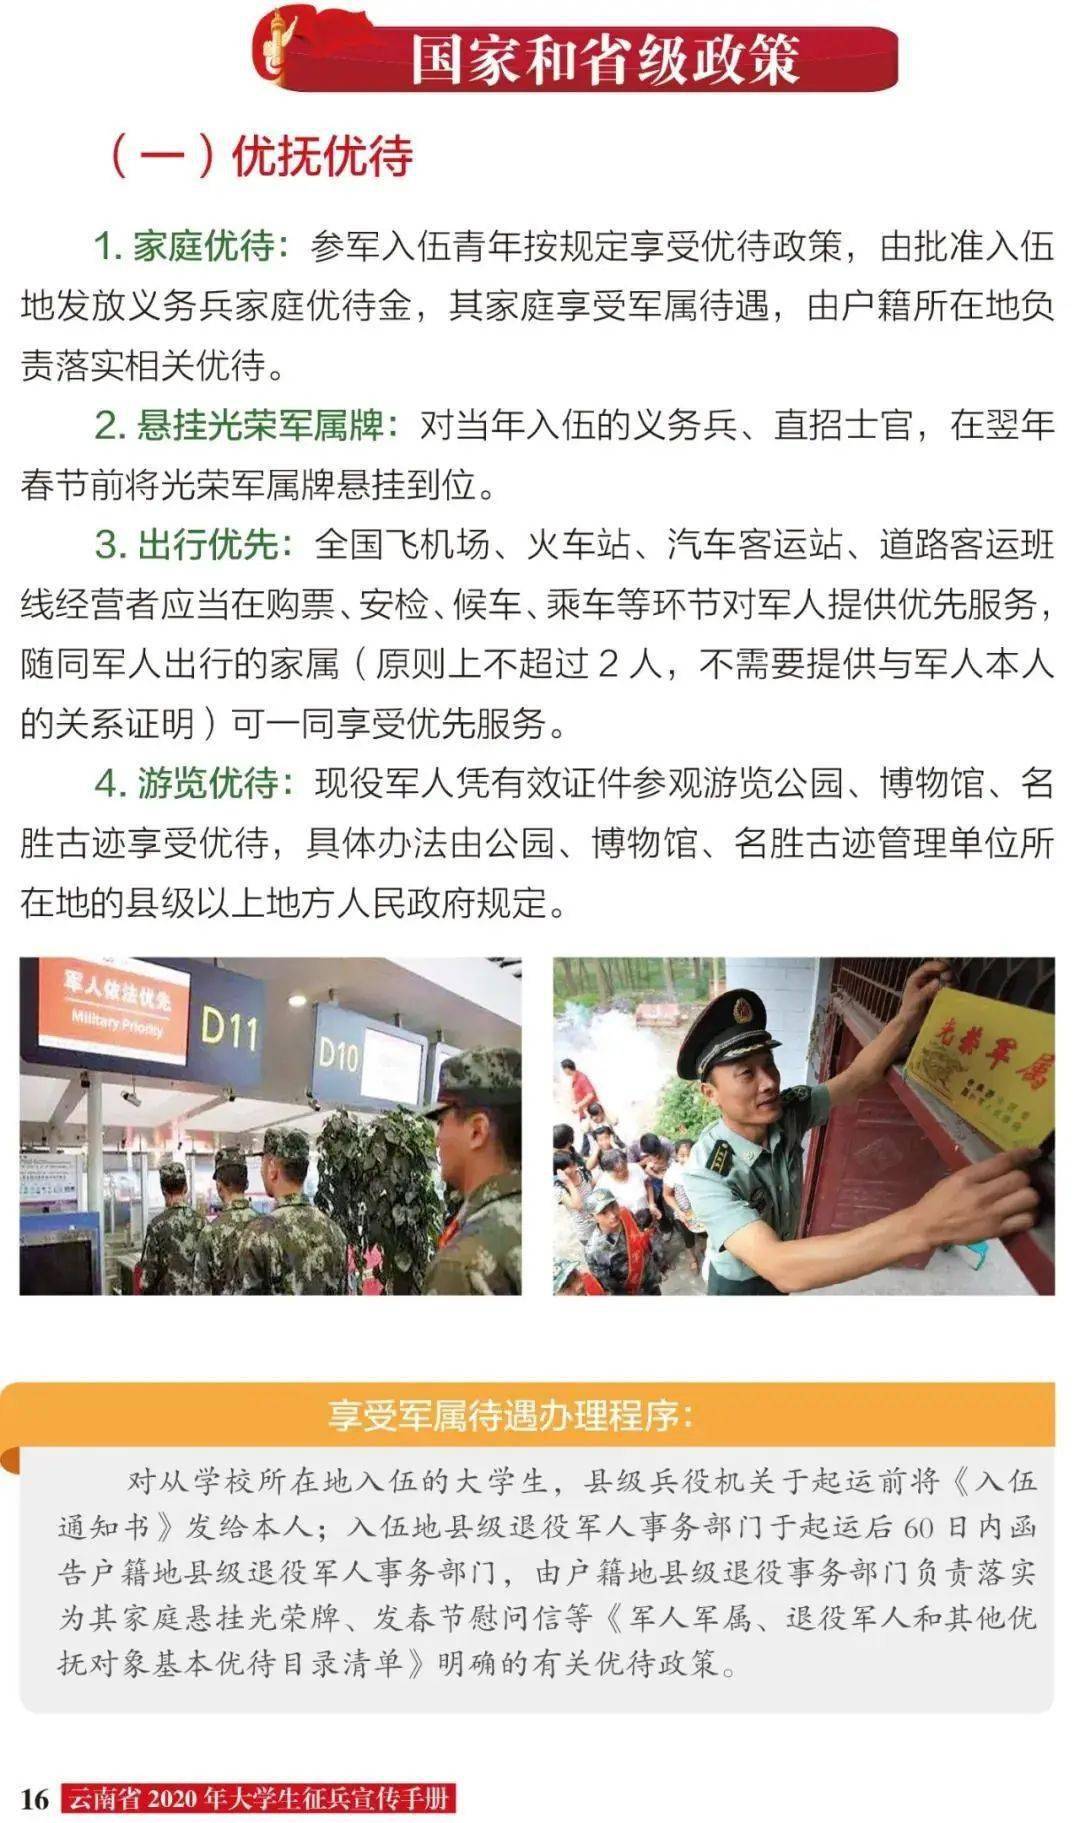 快收藏云南省2020年大学生征兵宣传手册